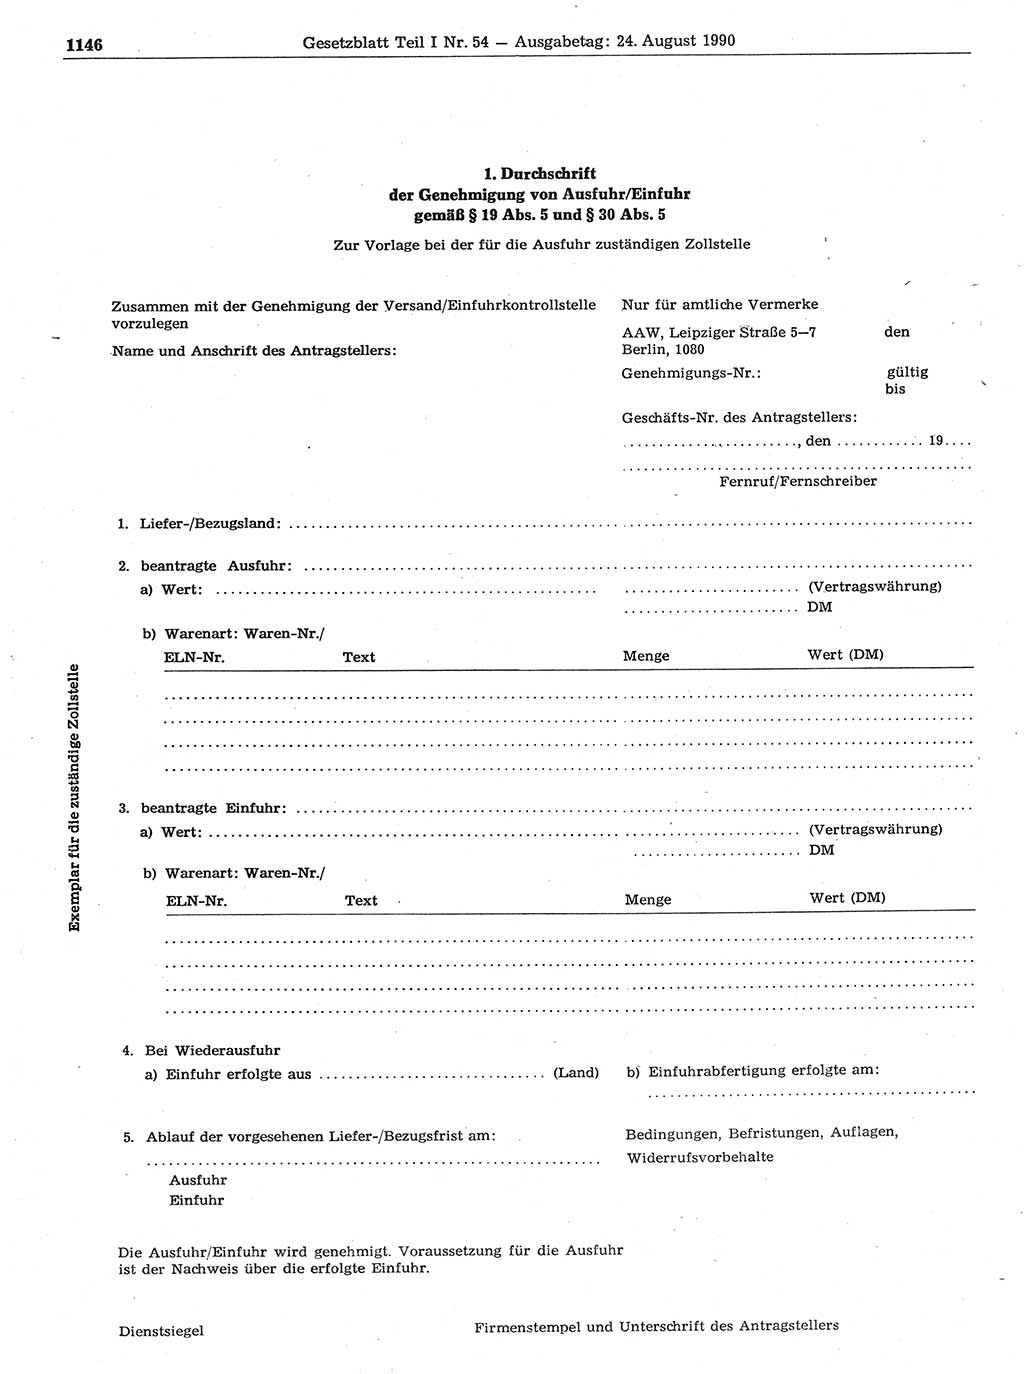 Gesetzblatt (GBl.) der Deutschen Demokratischen Republik (DDR) Teil Ⅰ 1990, Seite 1146 (GBl. DDR Ⅰ 1990, S. 1146)